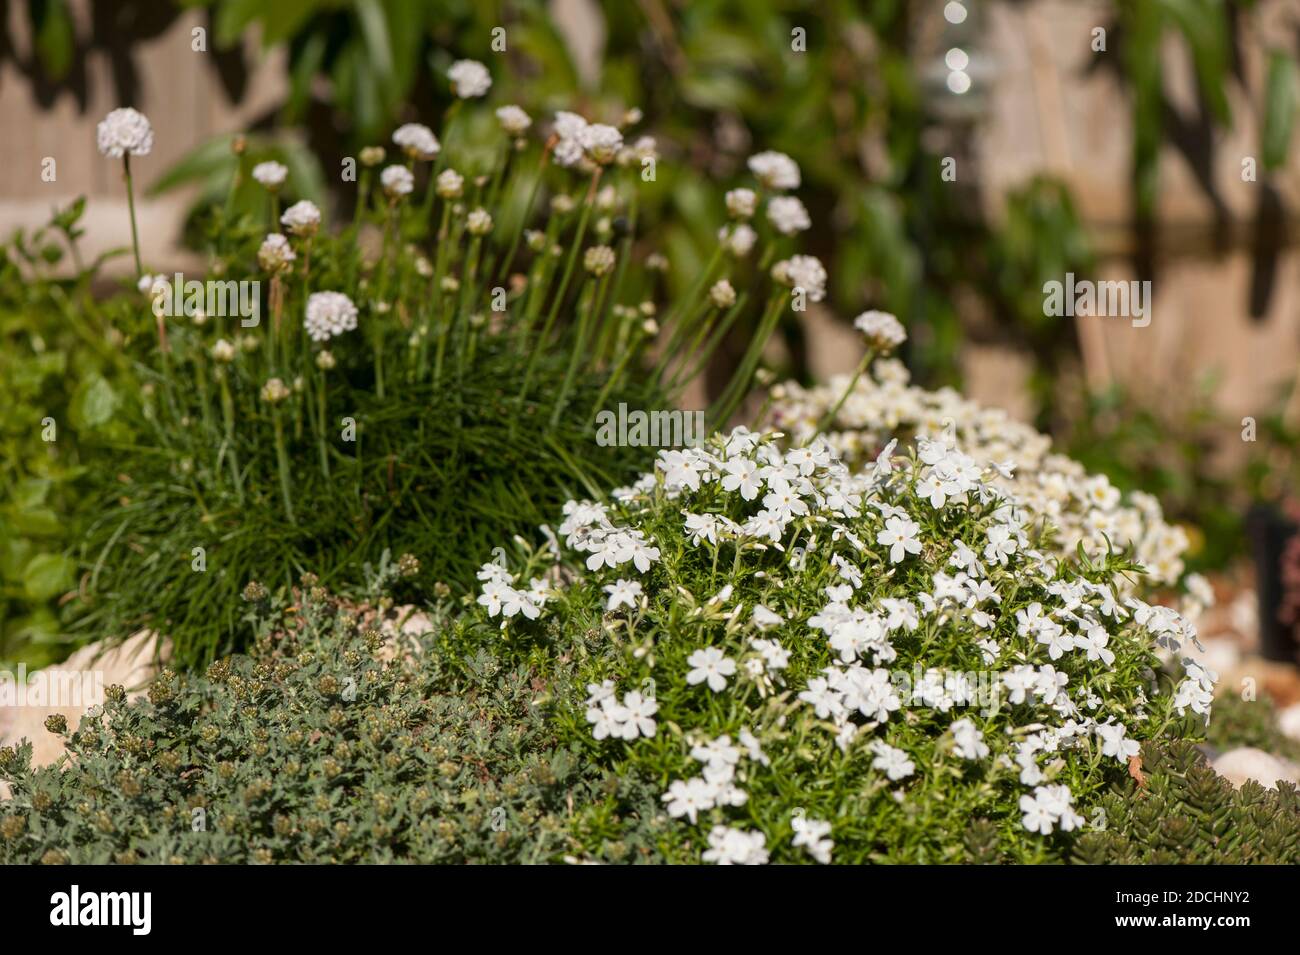 Phlox subulata 'White Delight' with Armeria maritima 'Alba' in the background Stock Photo